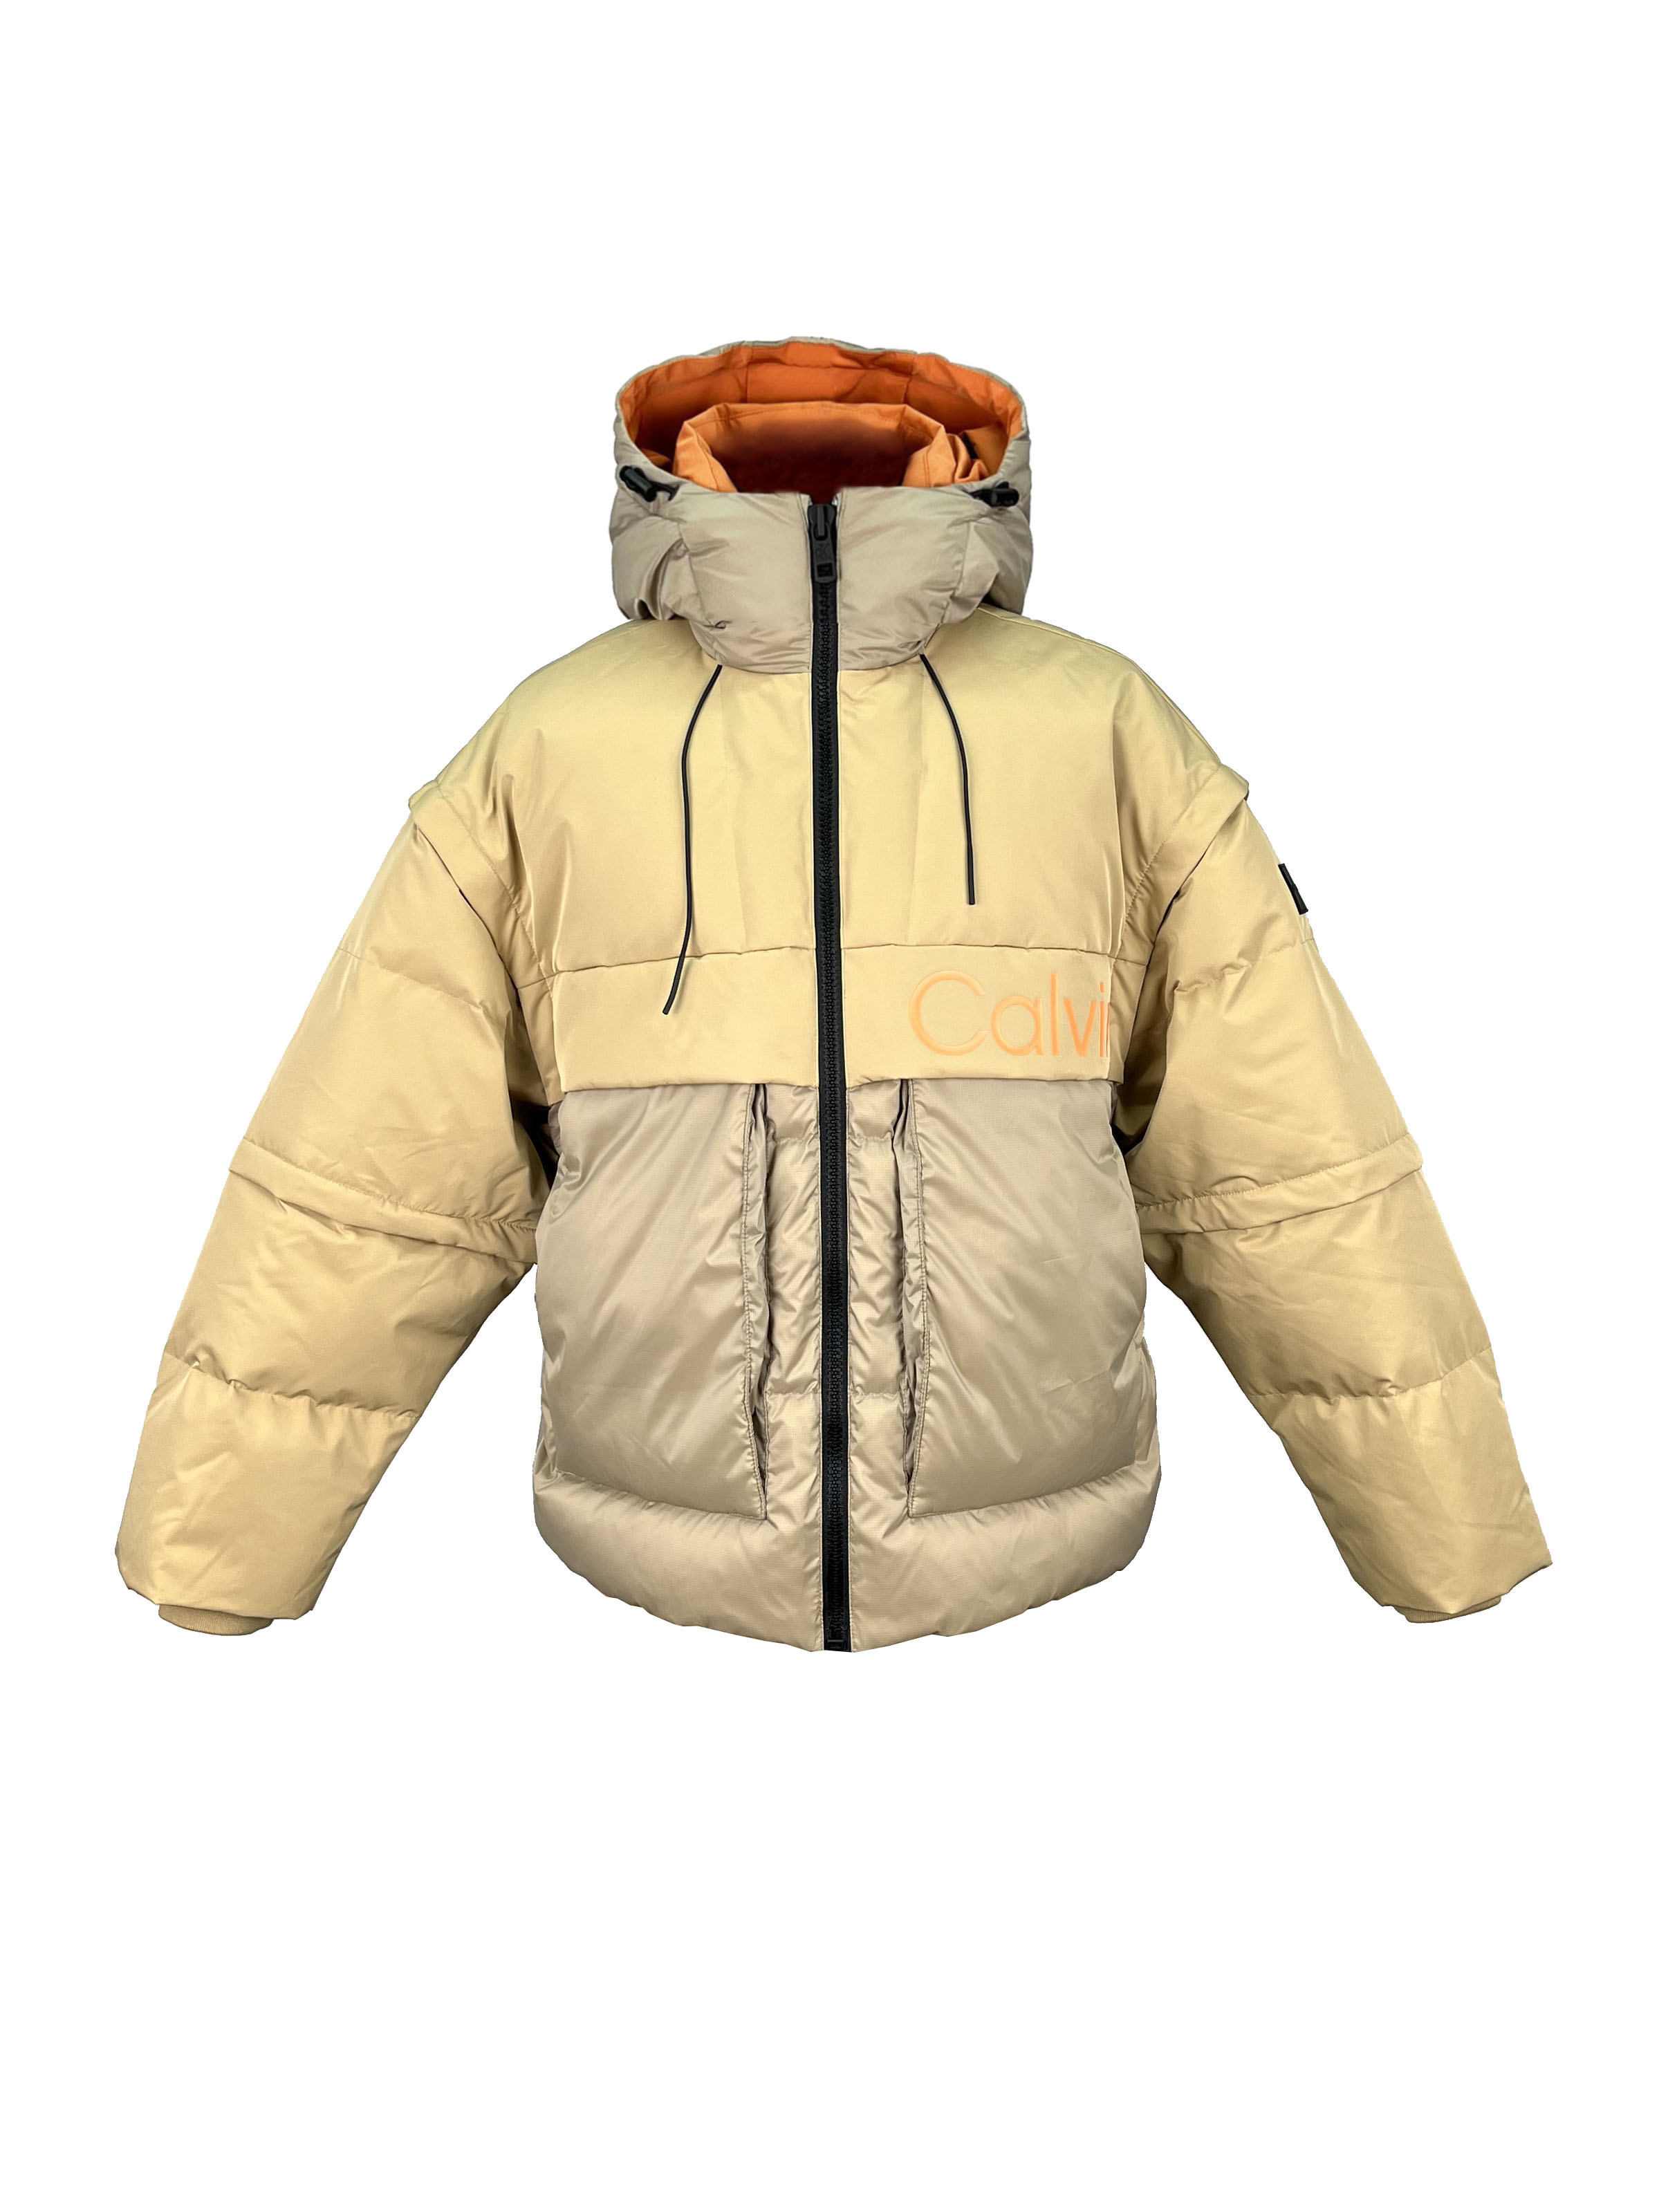 5.padded jacket. (1)